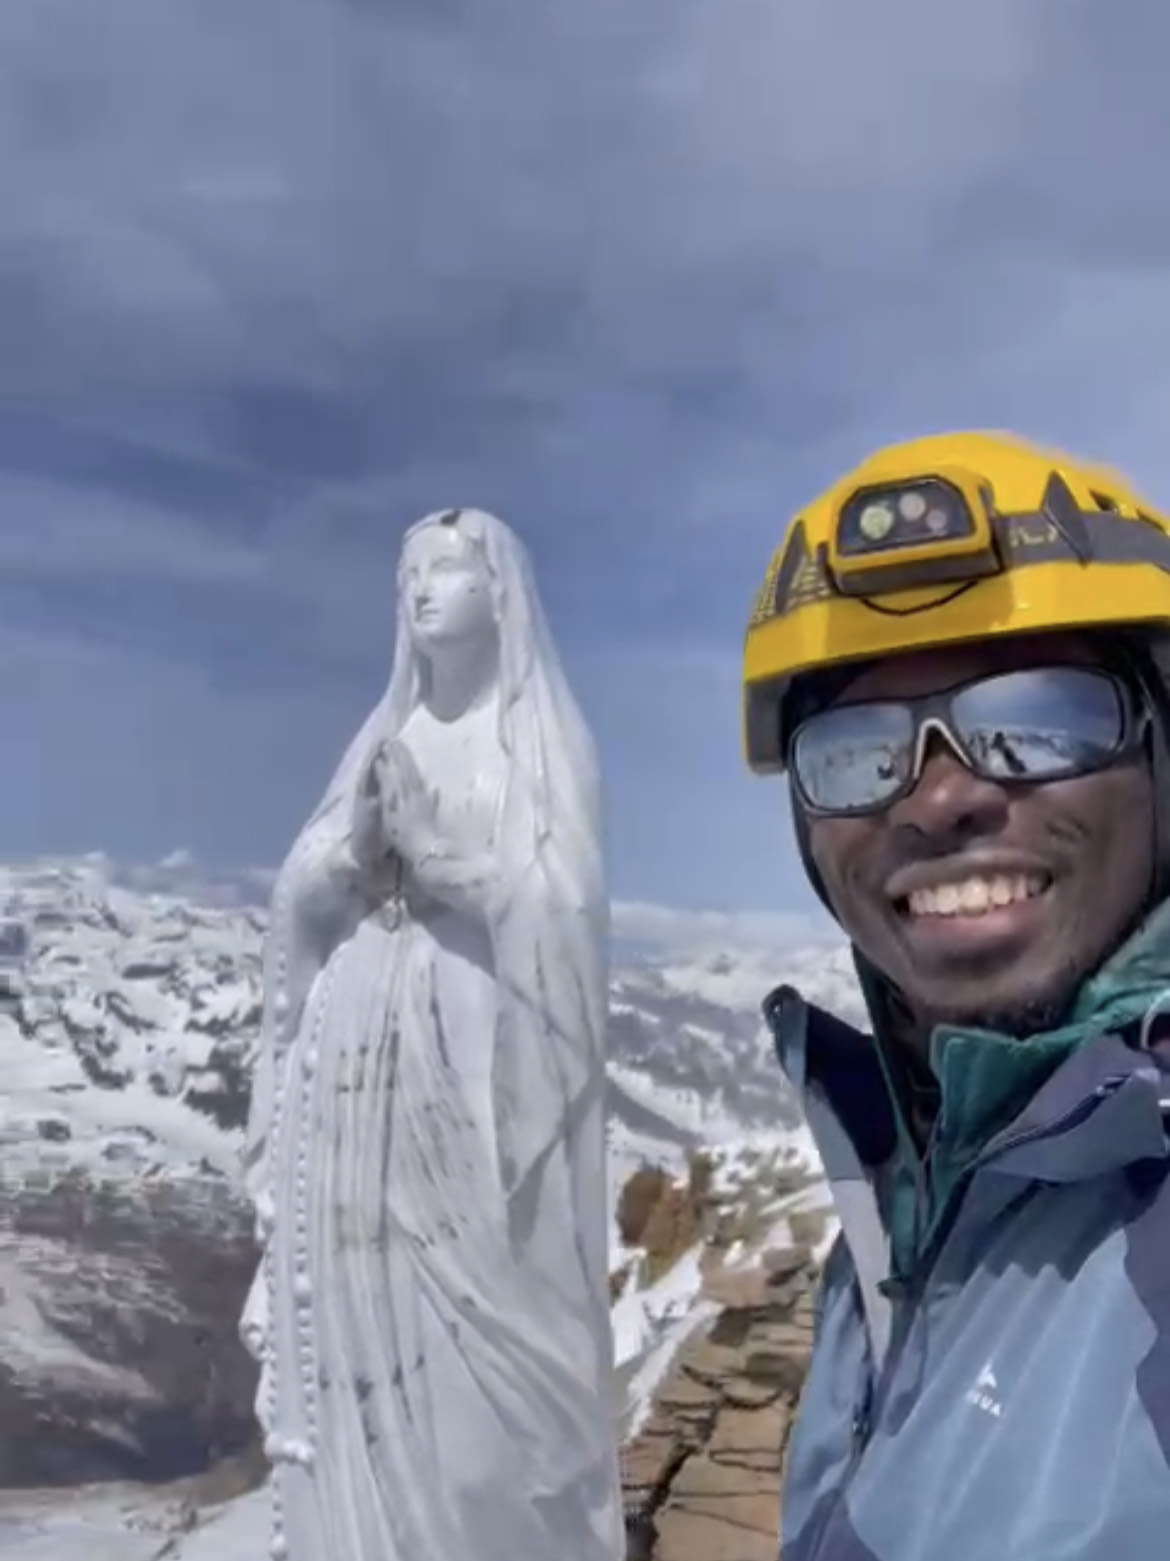 Alpinisme : Après le Mont-blanc et le Kilimandjaro, Mouhamed Tounkara a escaladé les 4061 mètres du Grand Paradiso !